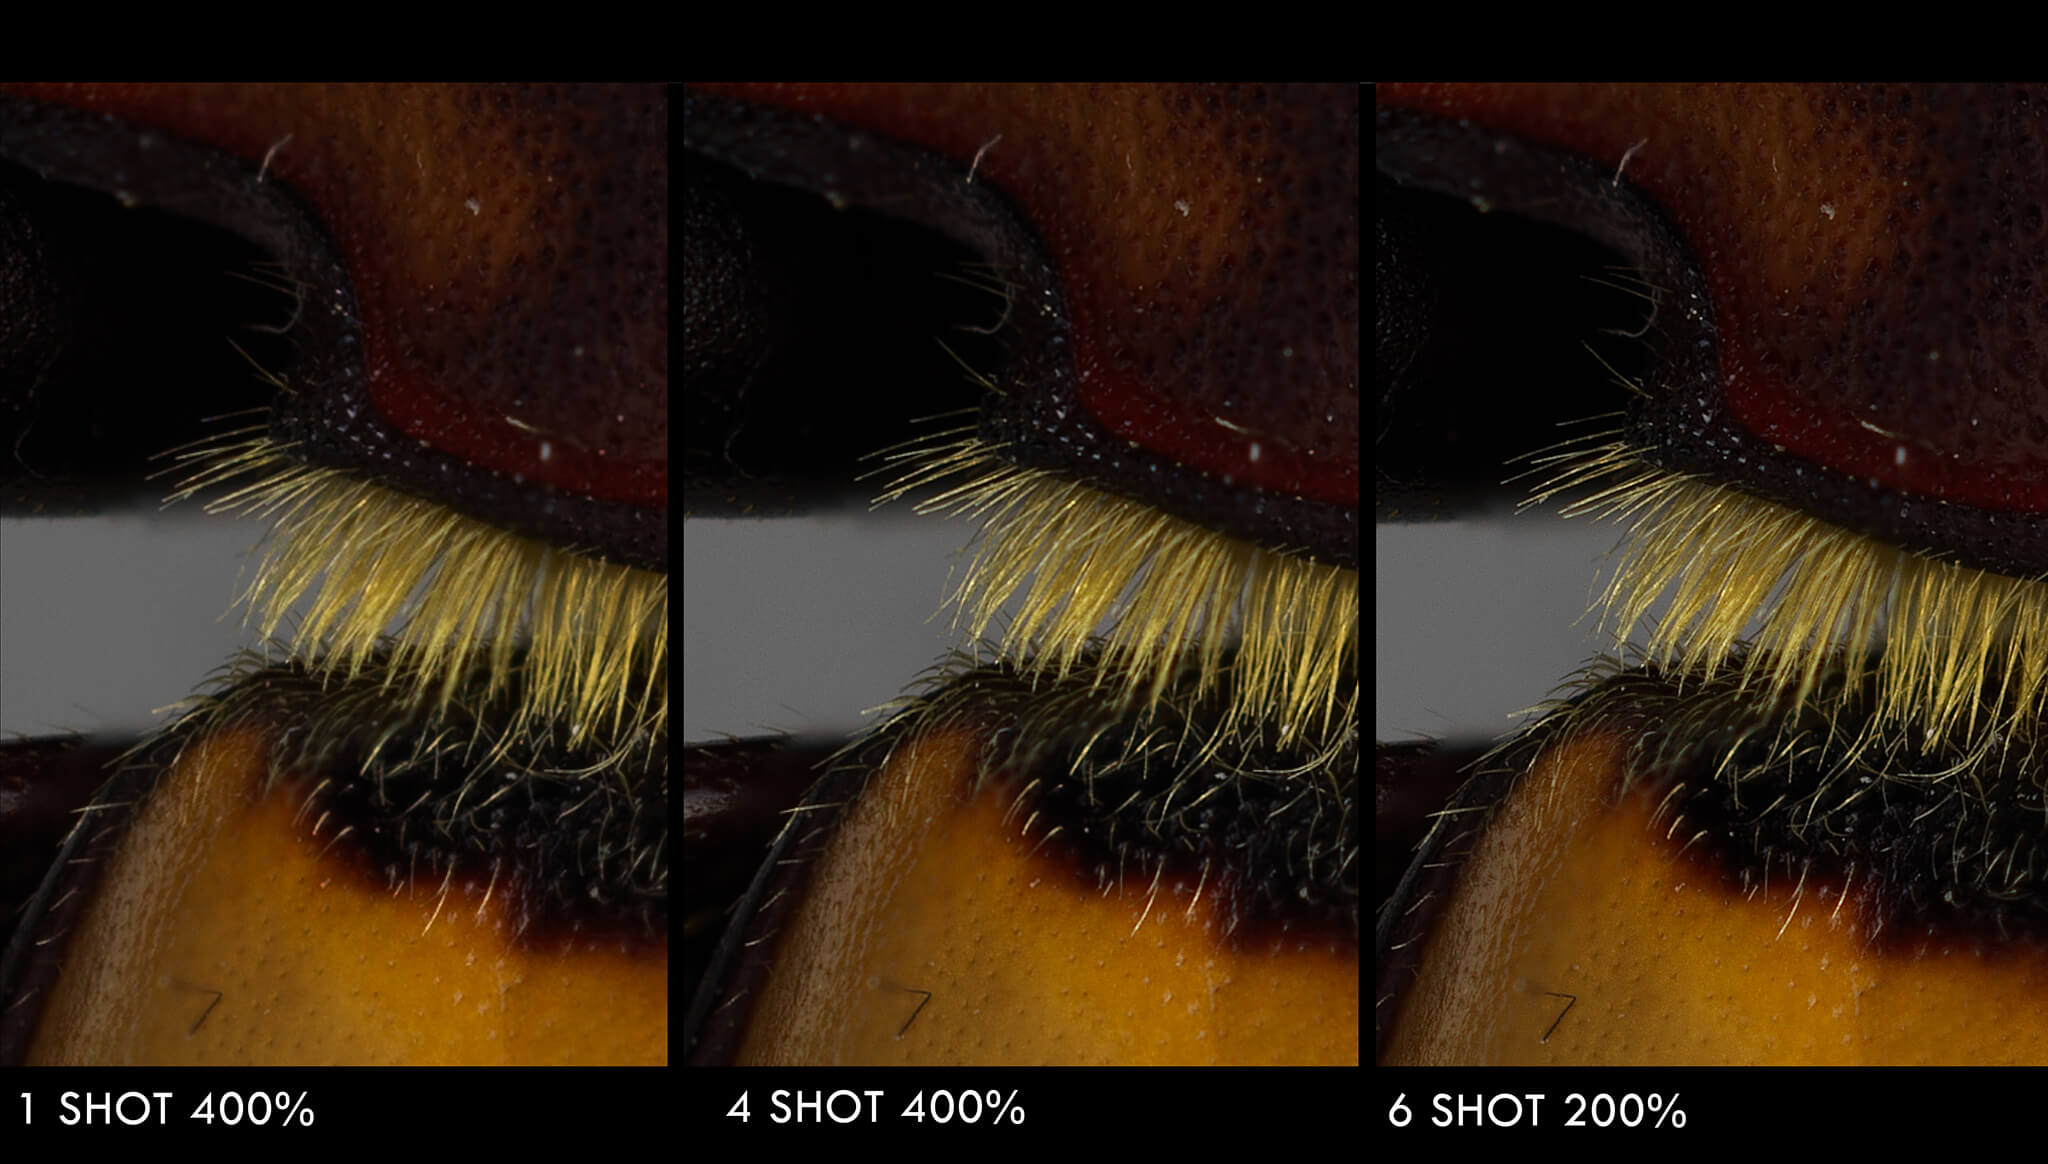 Detalhes do besouro com grande ampliação da imagem em três etapas da captura mostram a qualidade oferecida pela câmera 